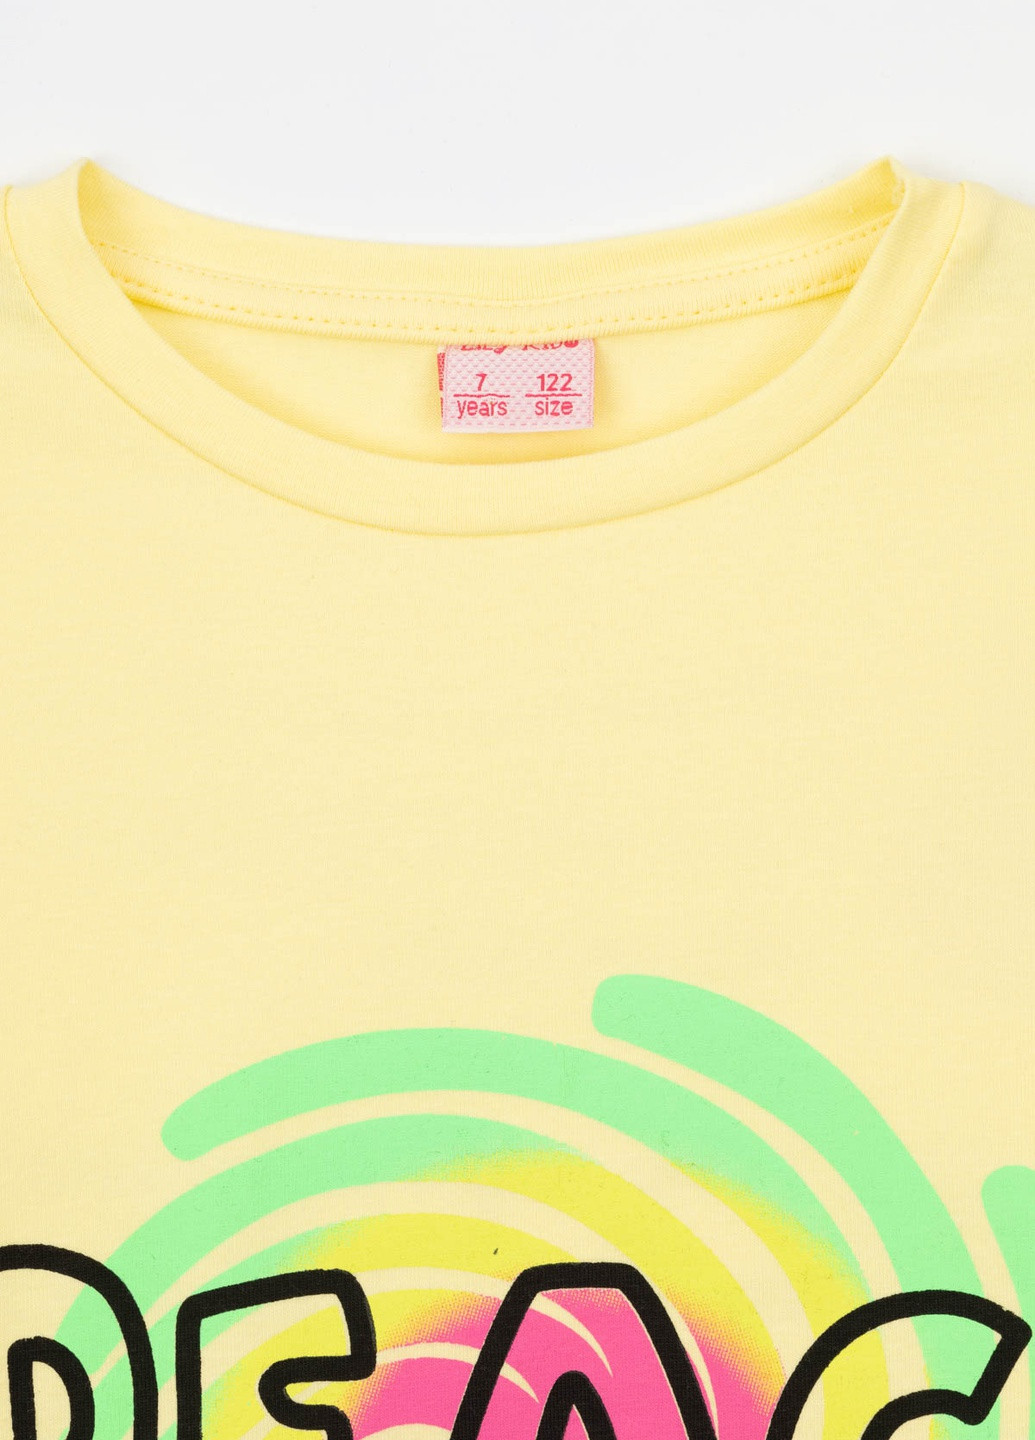 Жовта літня футболка Baby Show